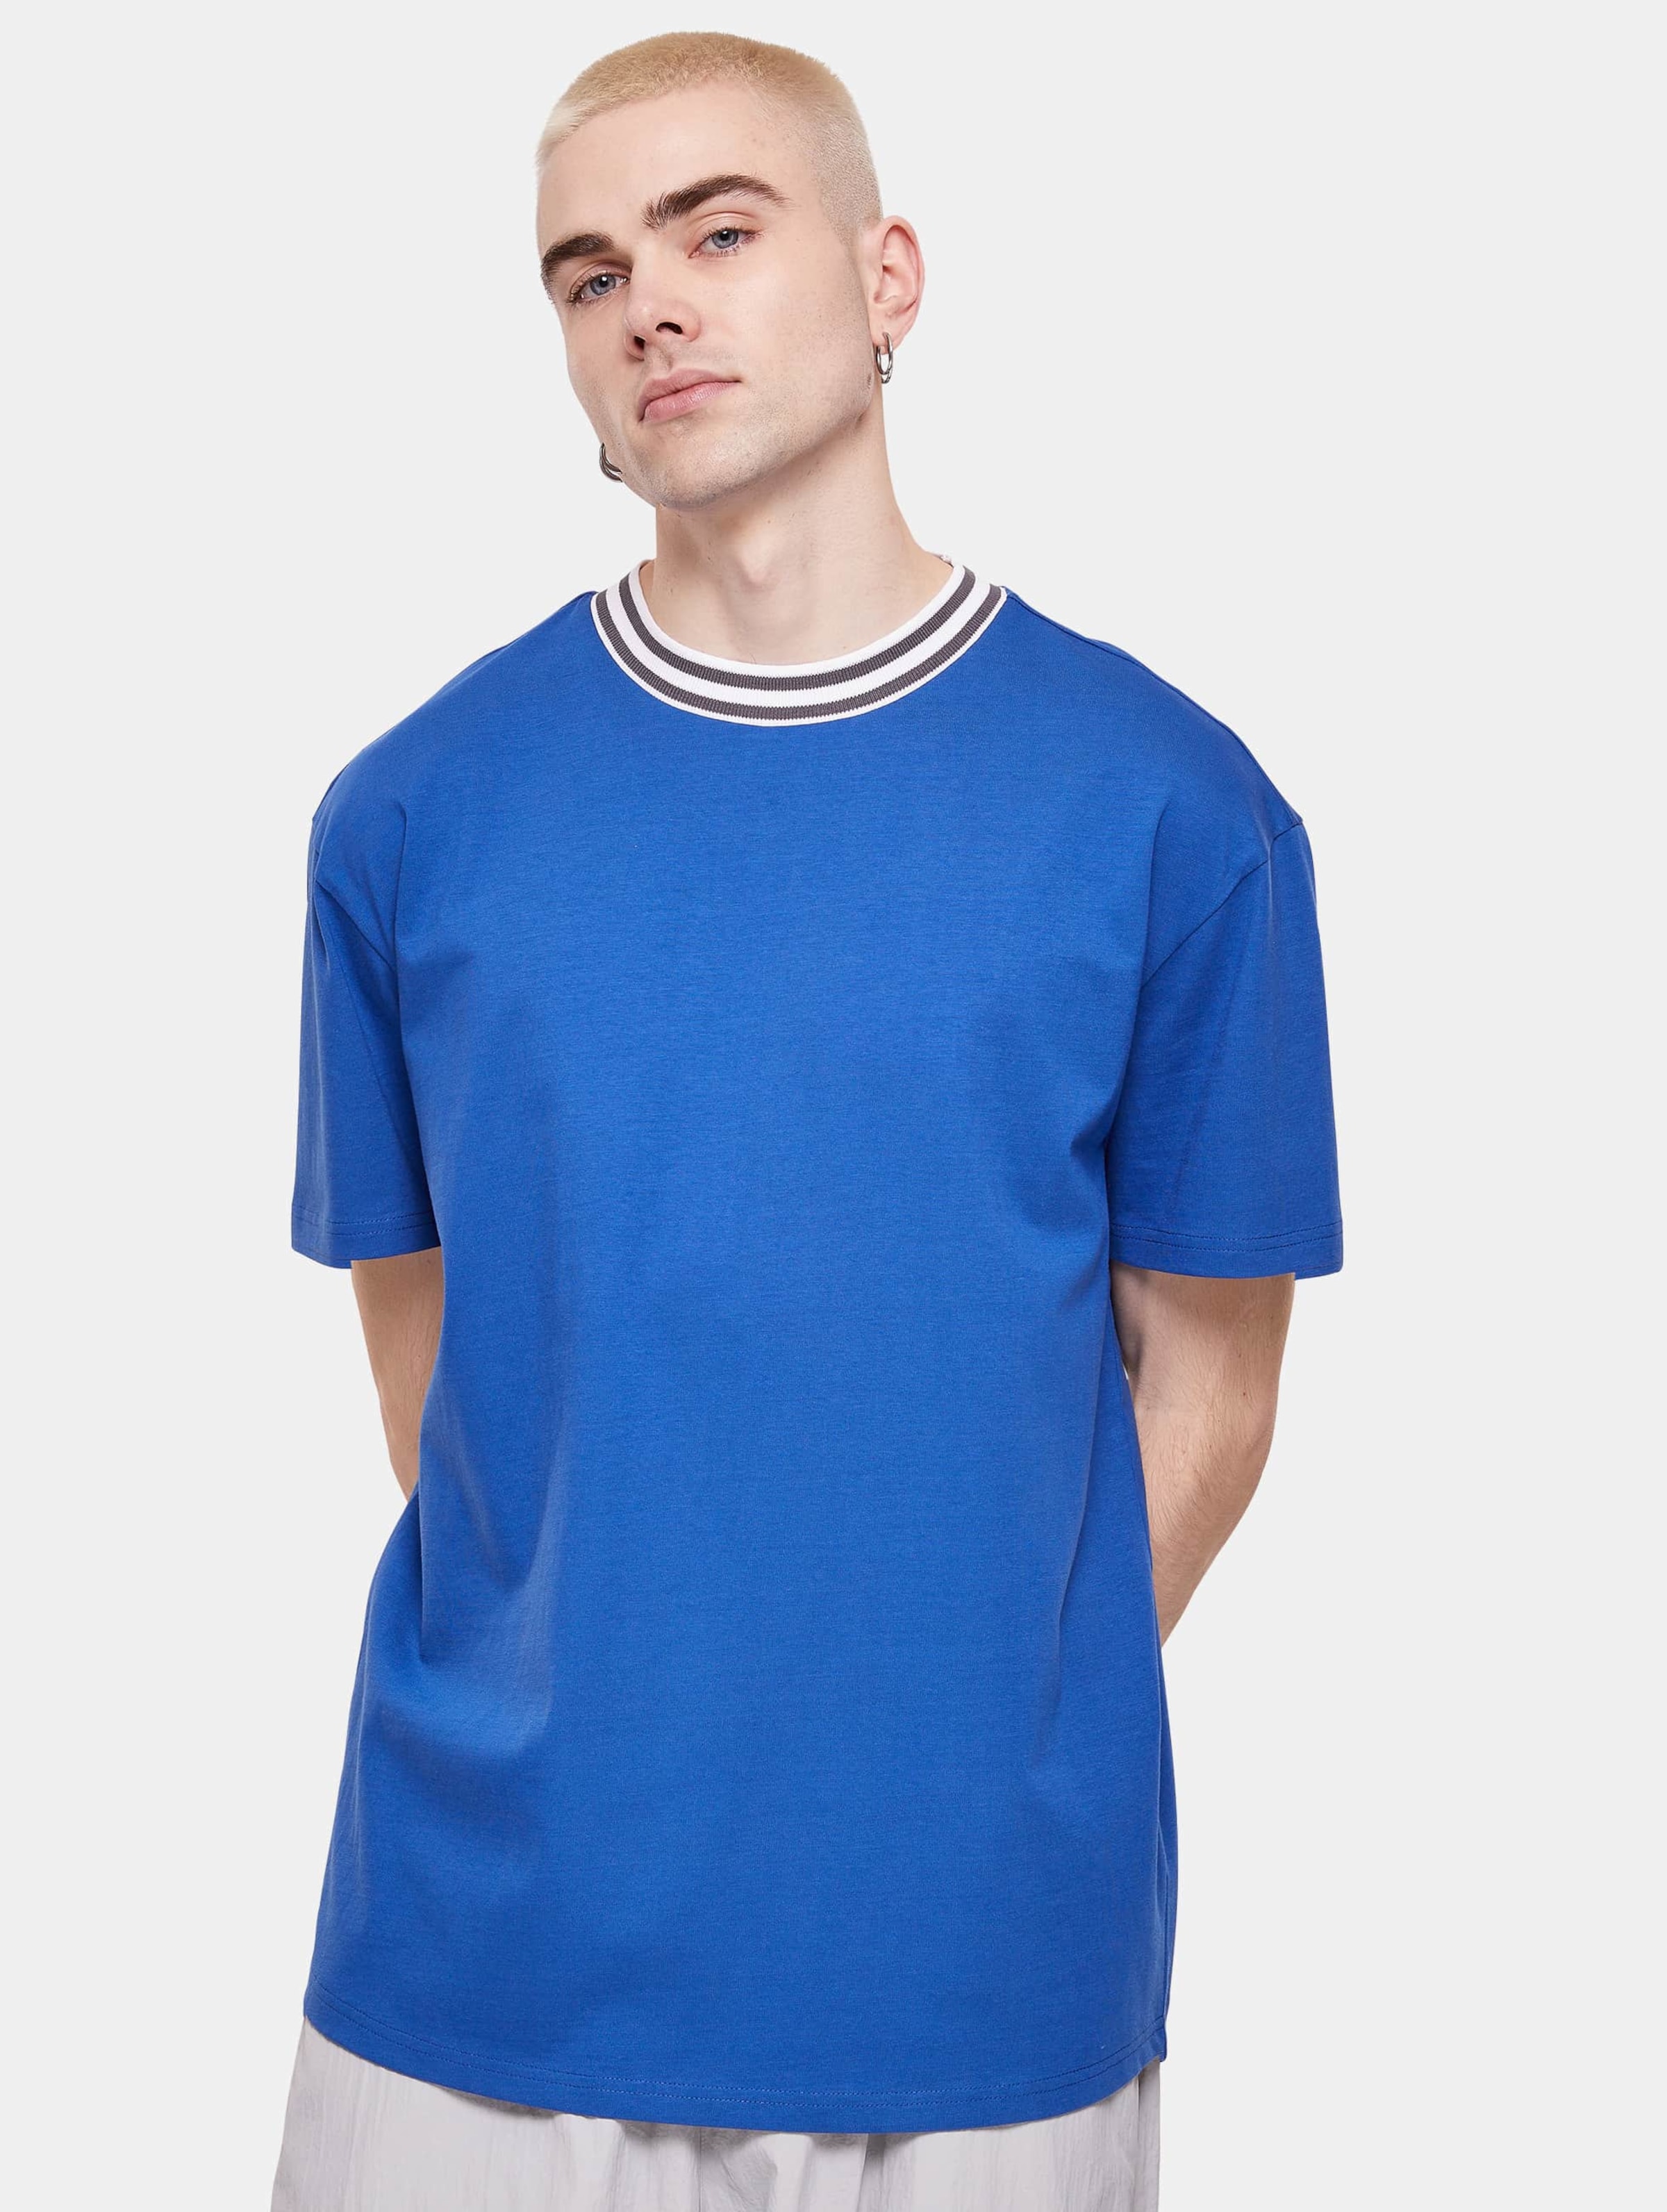 Urban Classics - Kicker Mens Tshirt - L - Blauw